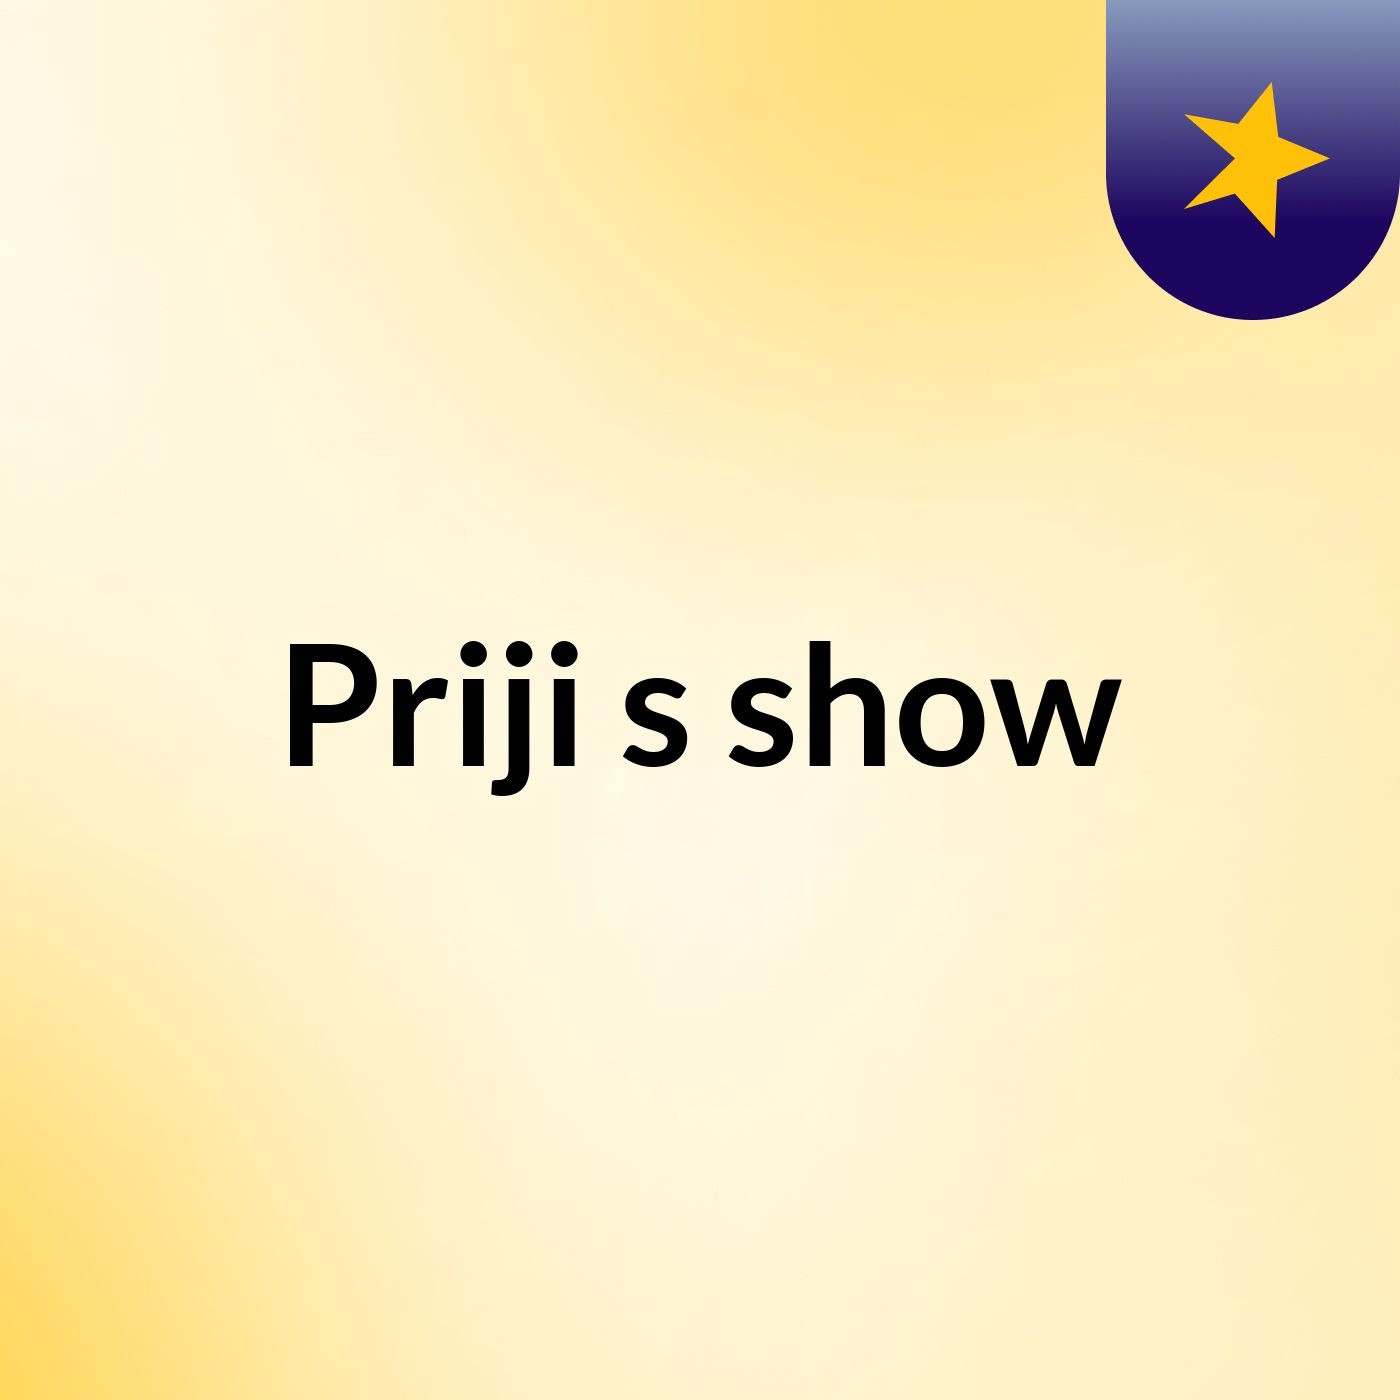 Priji's show